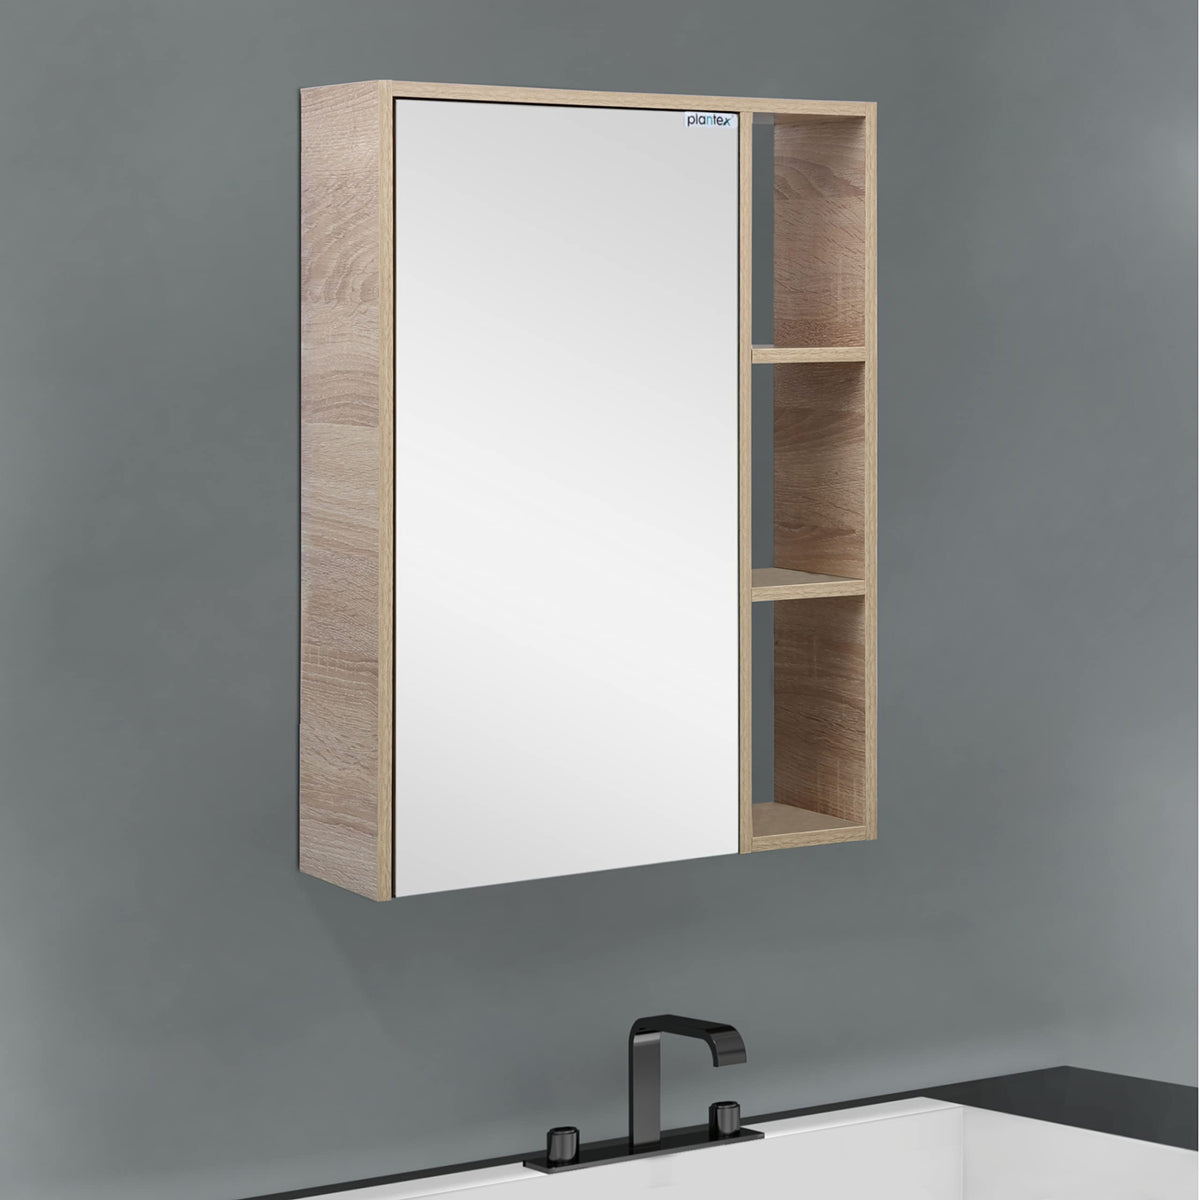 Plantex Bathroom Mirror Cabinet - HDHMR Wood Slimline Bathroom Organizer Cabinet (18 x 24 Inches) Bathroom Accessories (Castel Oak)